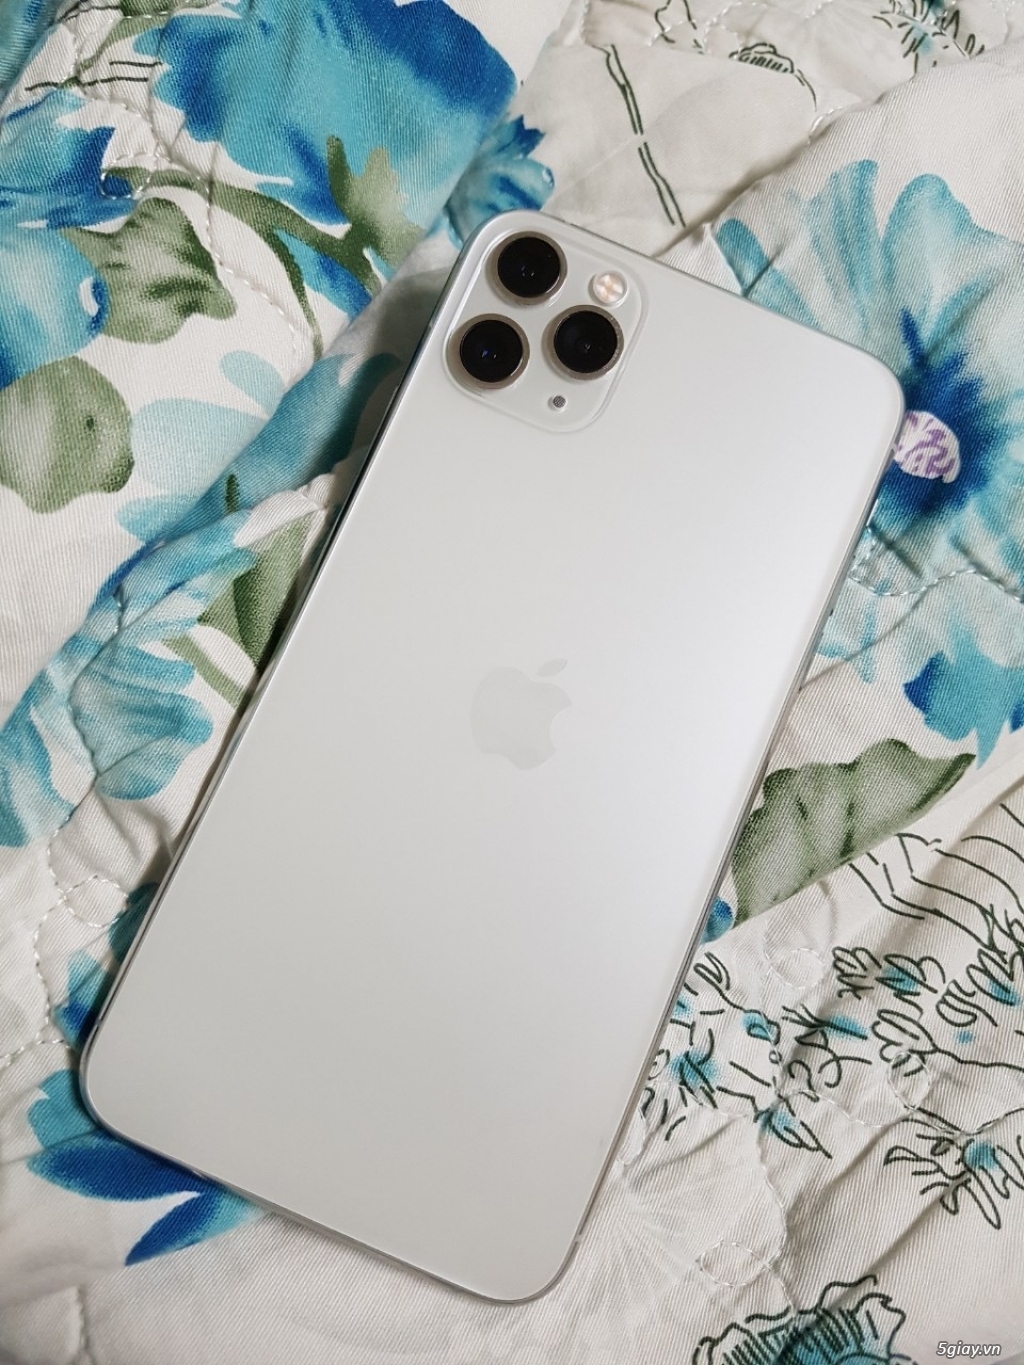 iPhone 11 Pro Max màu Trắng là một sự lựa chọn hoàn hảo cho những người yêu thích sự thanh lịch và tối giản. Hãy xem hình ảnh để thấy rõ nét sự đẳng cấp của chiếc điện thoại này.